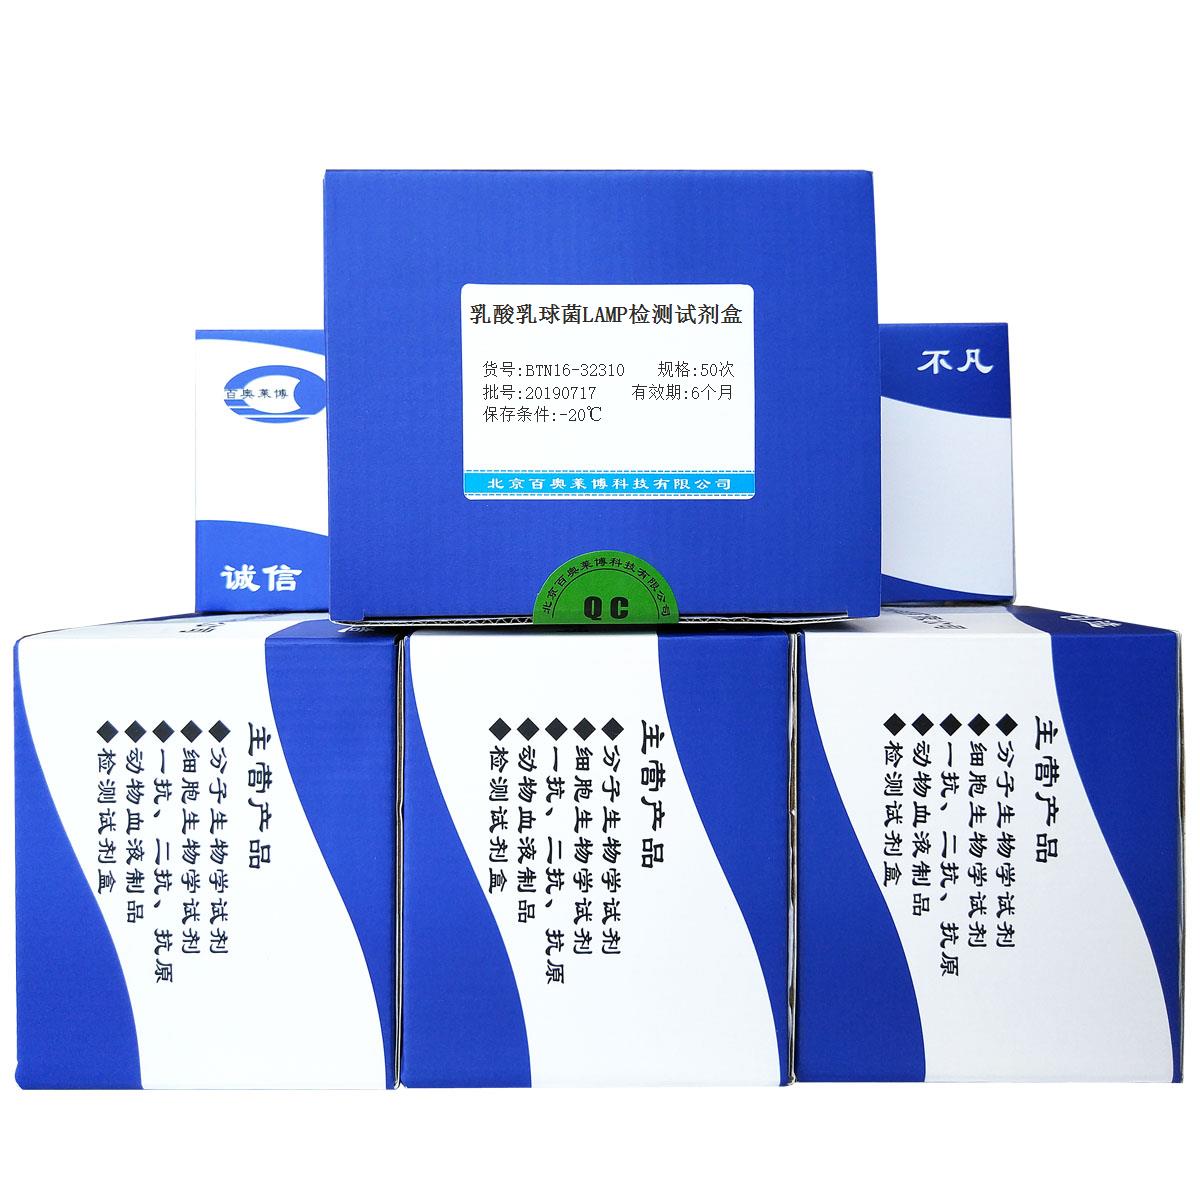 乳酸乳球菌LAMP检测试剂盒北京供应商